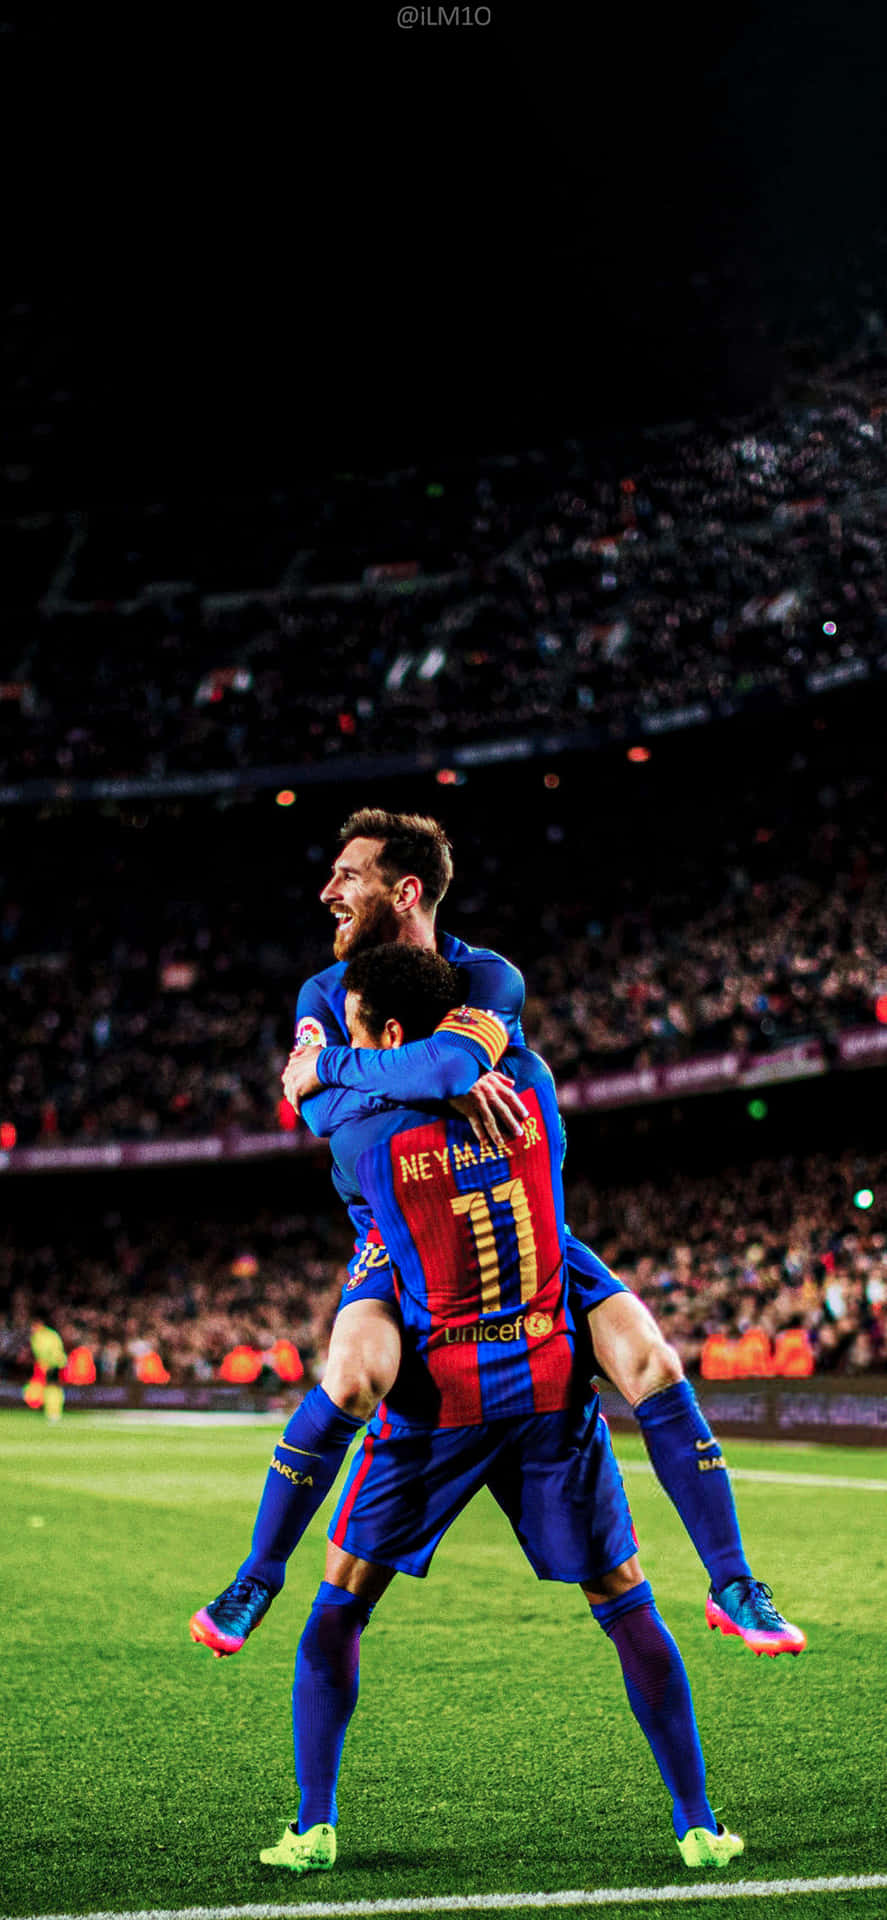 Bức hình nền Neymar x Messi 4k này là món quà tuyệt vời dành cho những ai yêu thích bóng đá và mong muốn sở hữu bức tranh đủ sức làm say mê bất cứ ai. Độ phân giải cao và sự kết hợp hoàn hảo giữa hai siêu sao sẽ khiến bạn không thể rời mắt khỏi bức tranh này.